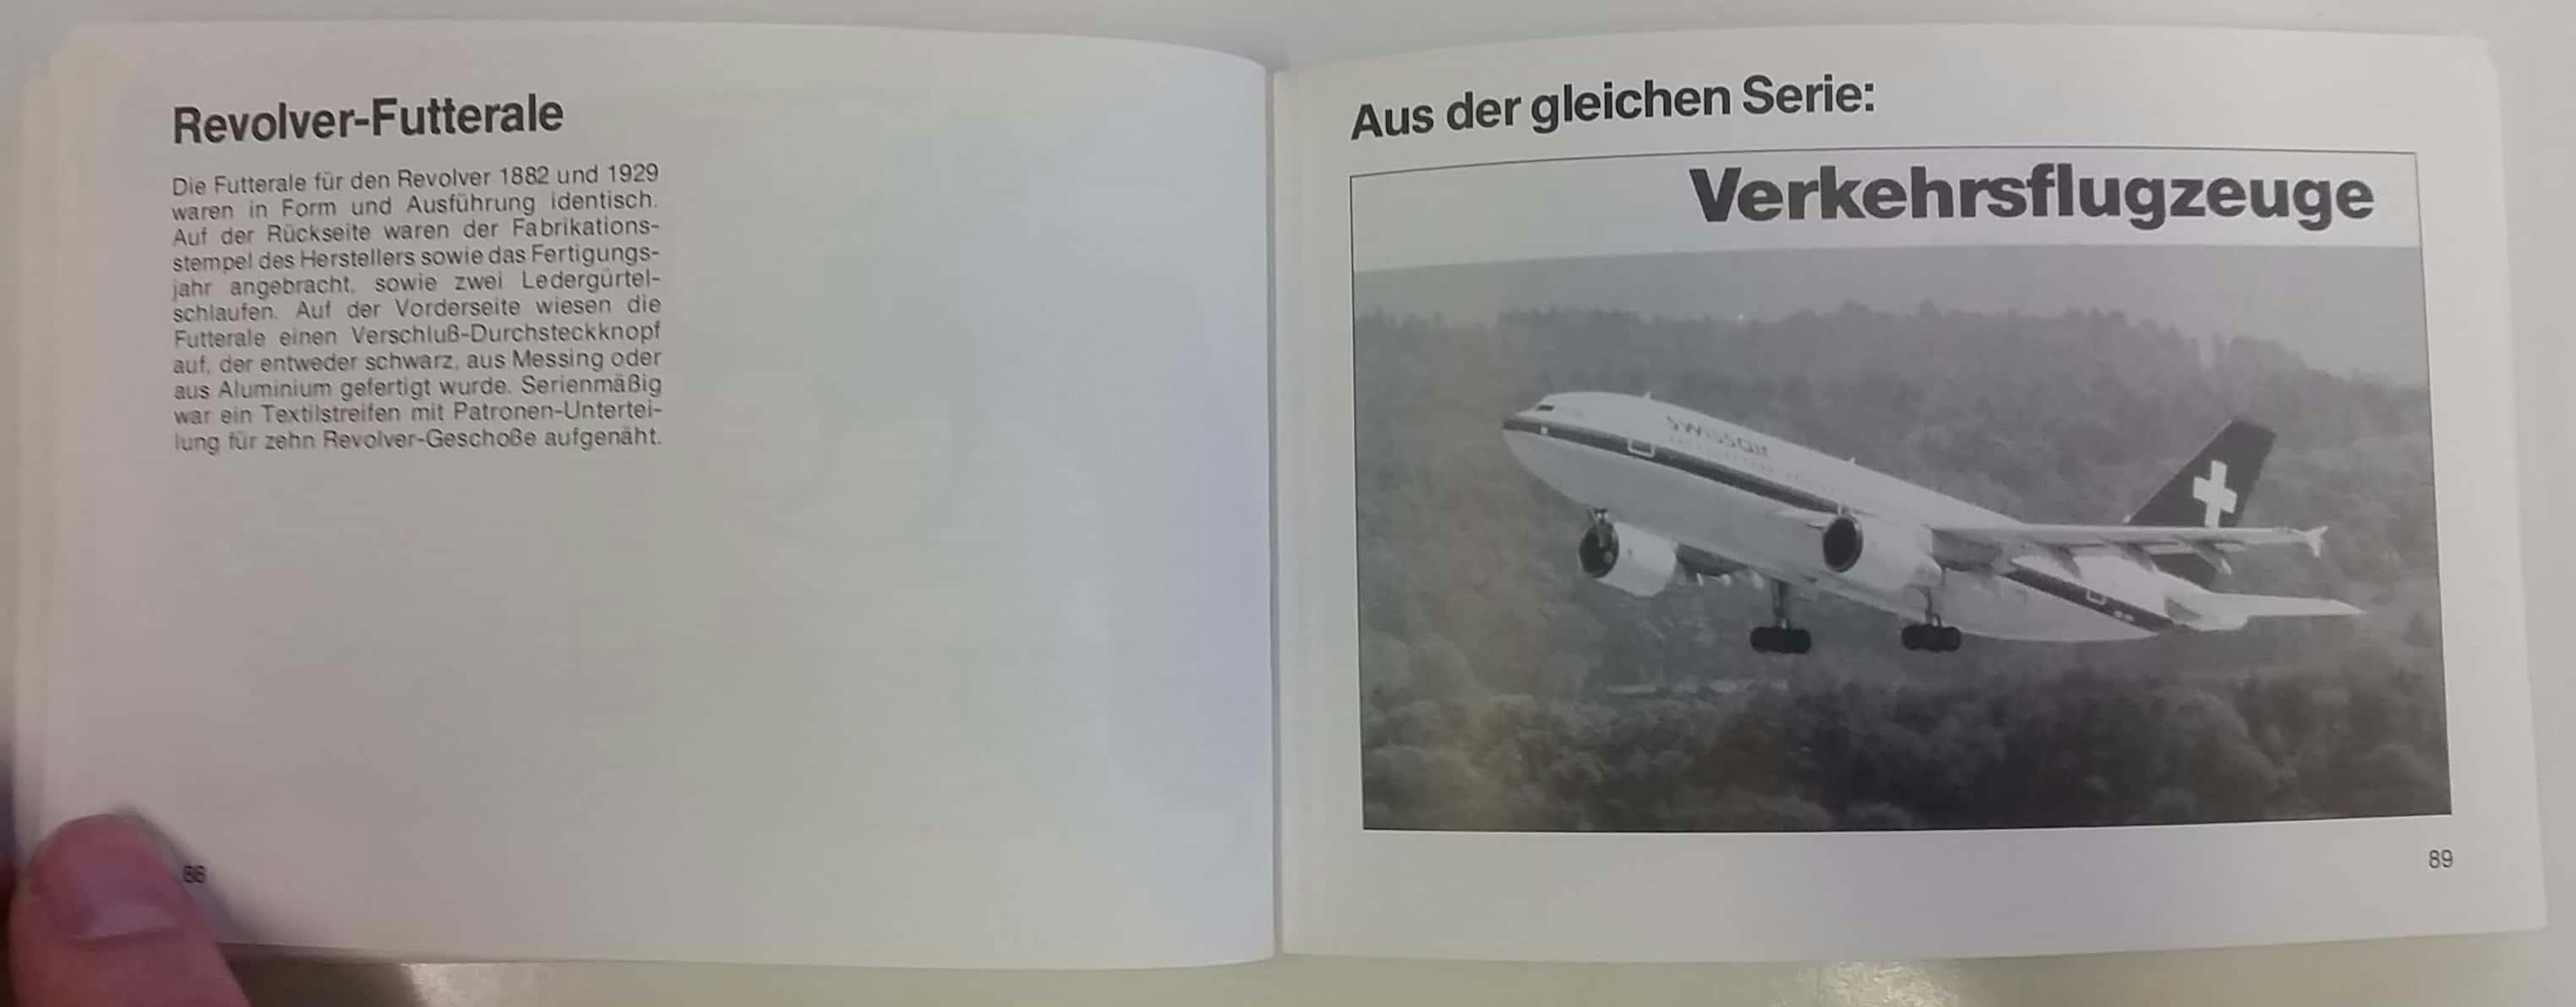 Anstatt Revolver-Futterale Werbung für das Verkehrsflugzeugebuch.